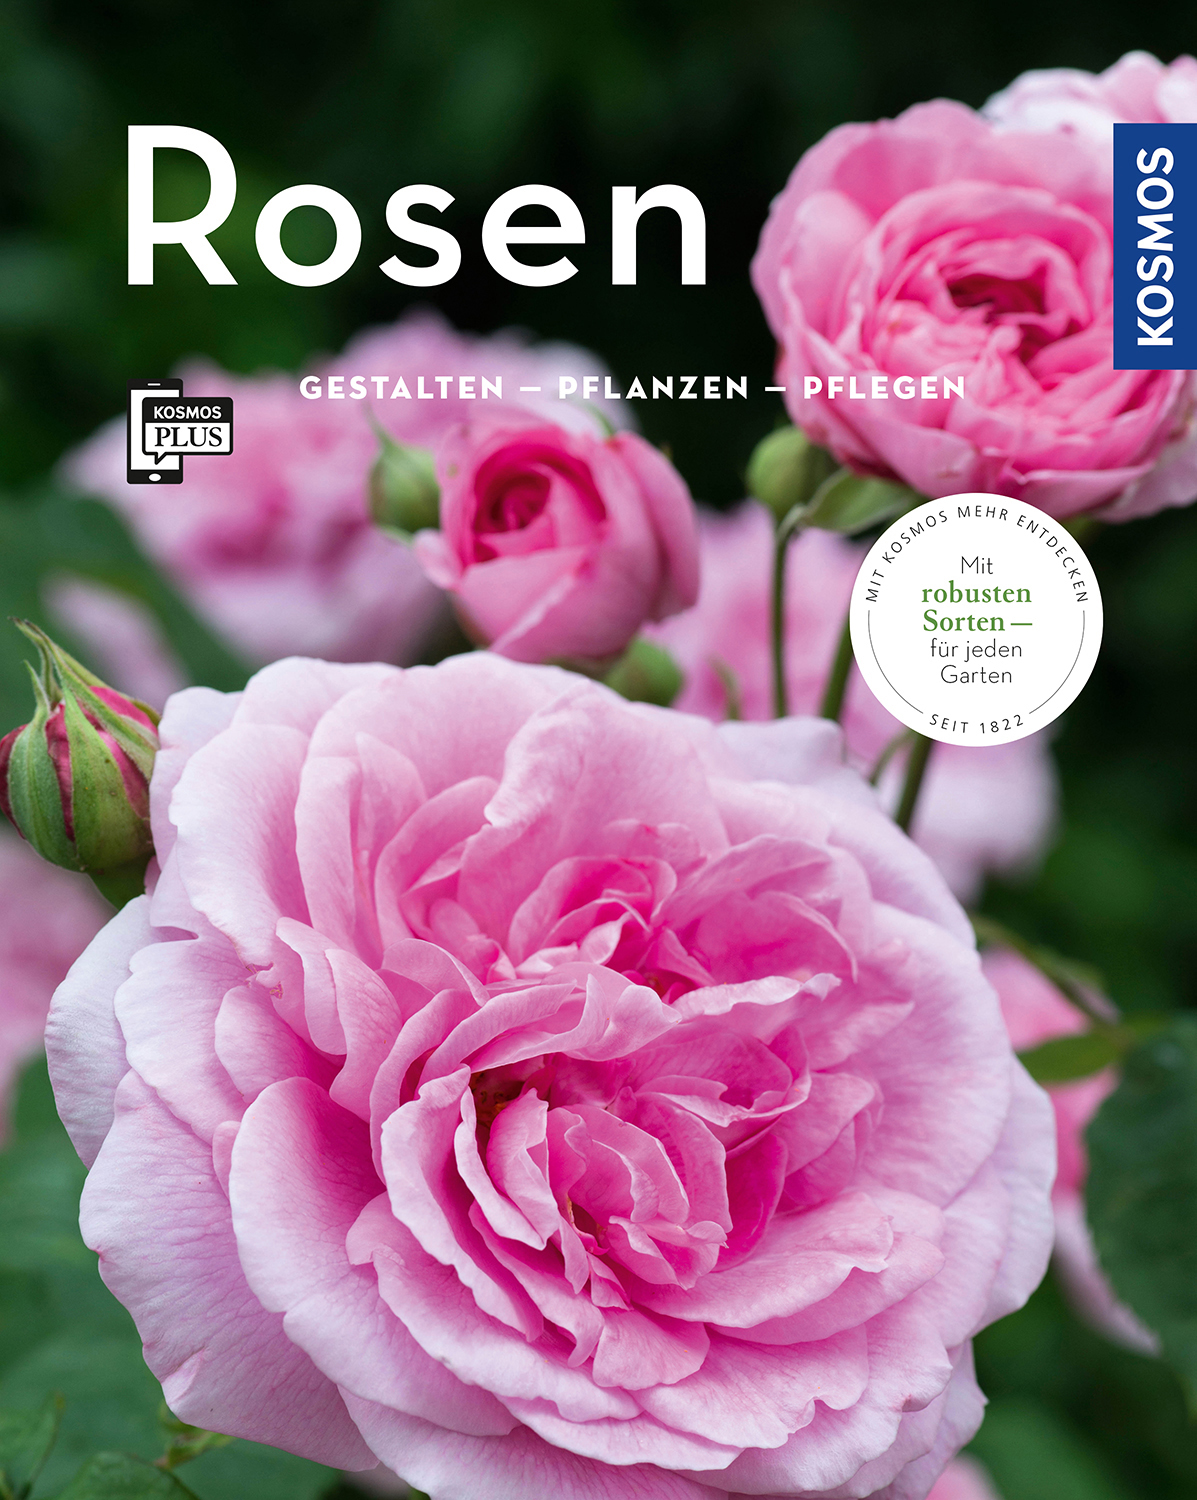 Ratgeber Garten Schön Rosen Mein Garten